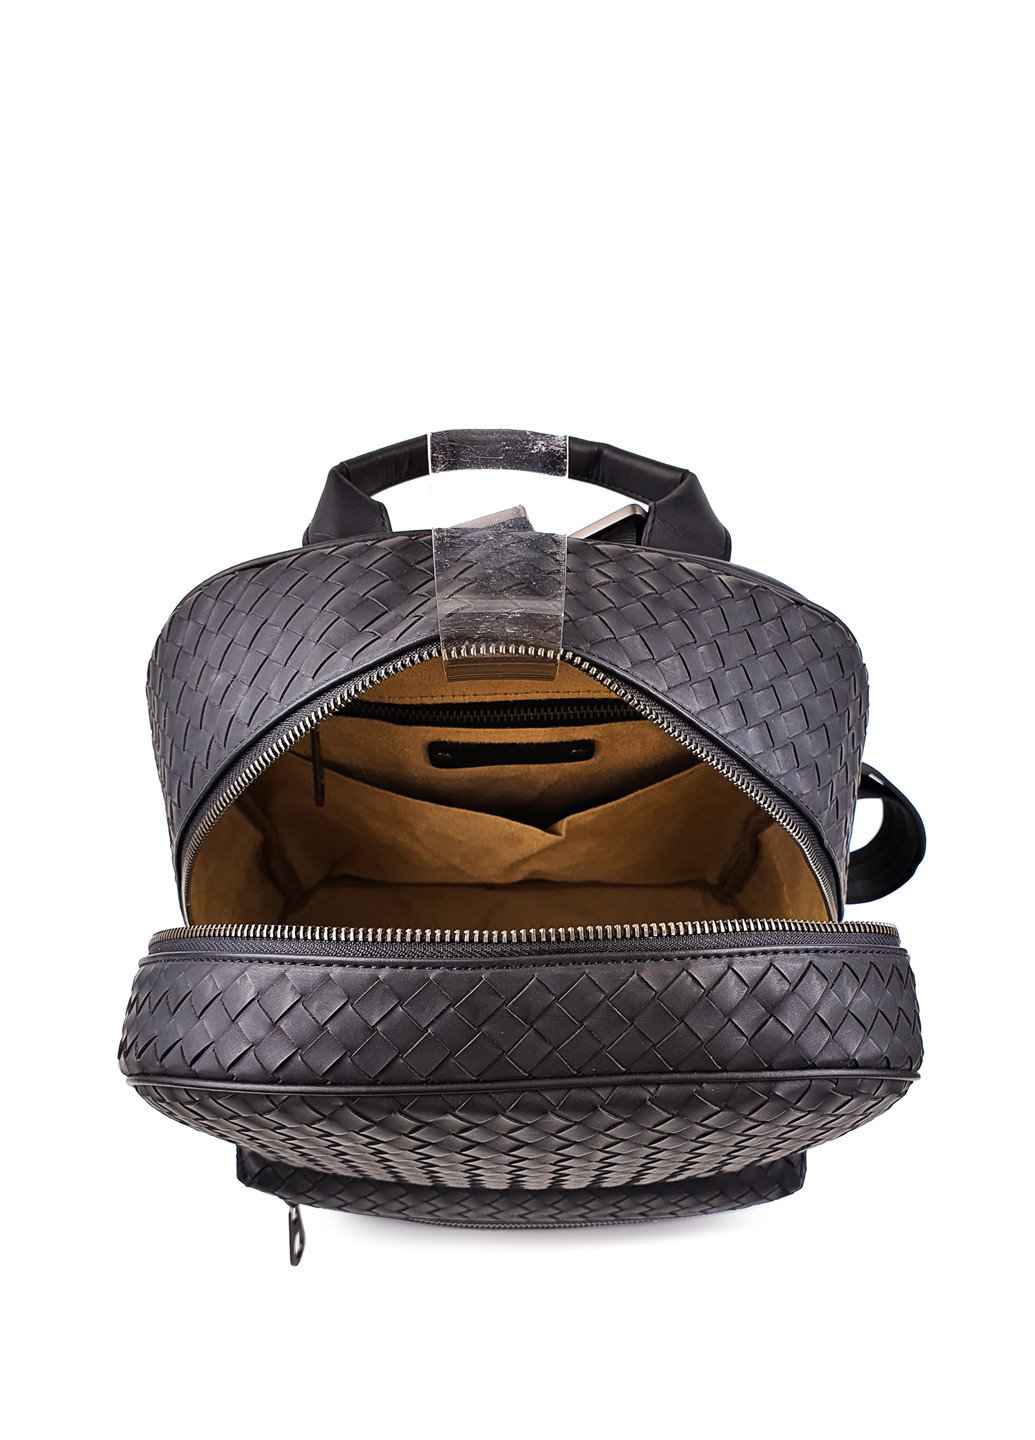 Модний чоловічий шкіряний рюкзак темно-сірого кольору Fashion рюкзак (251825960)